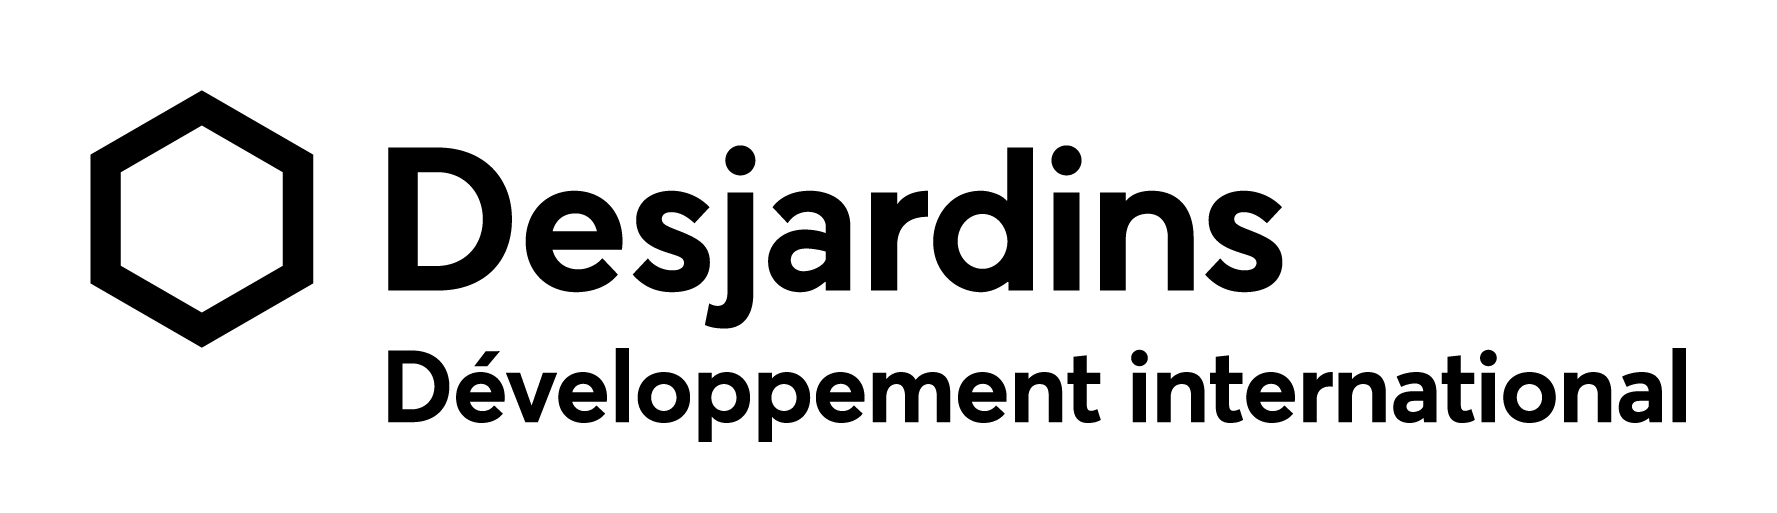 Logo Développement international Desjardins – black and white